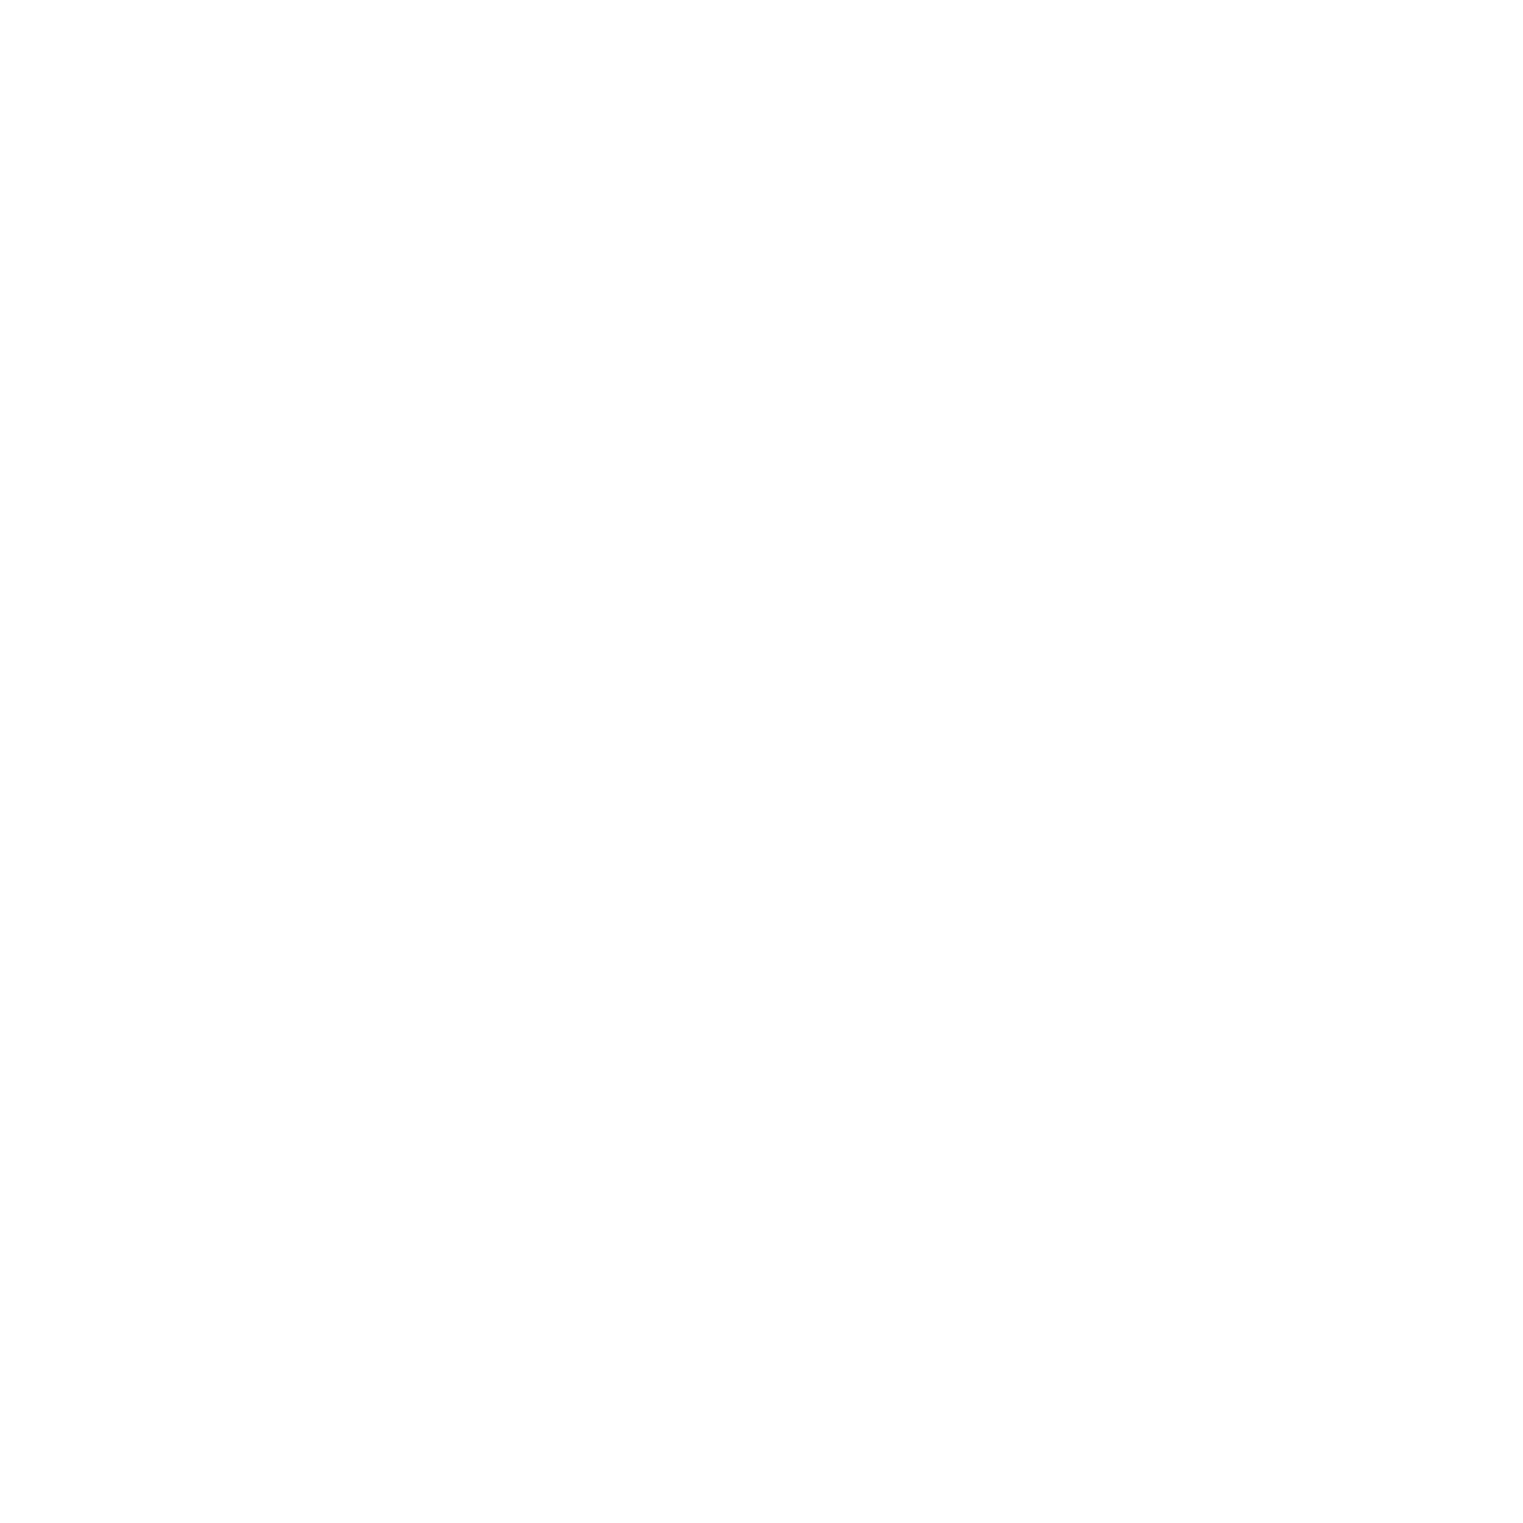 Jyske Bank logo for dark backgrounds (transparent PNG)